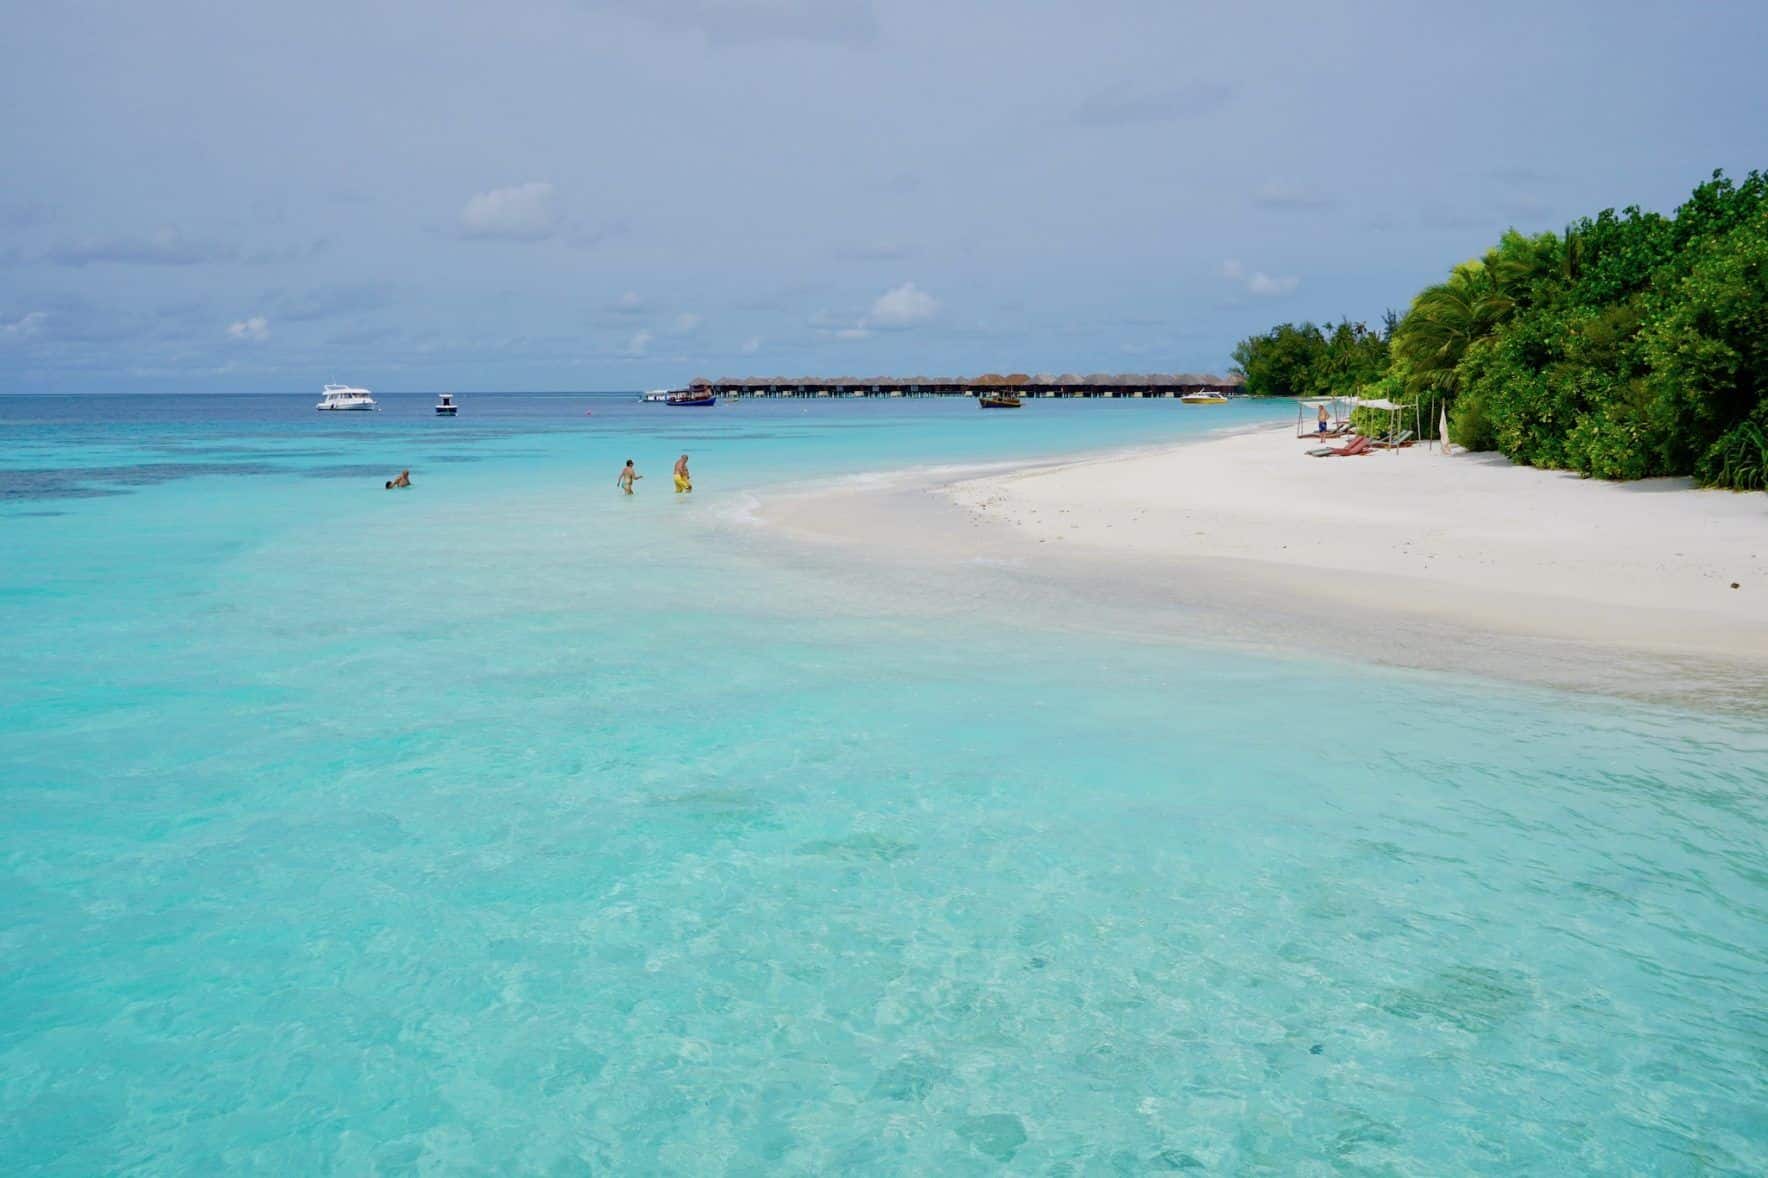 Le lagon de Coco Bodu Hithi : A cette vue, vous pouvez simplement passer le temps dans l'eau. Photo: Sascha Tegtmeyer Rapport de voyage Coco Bodu Hithi conseils Expériences aux Maldives